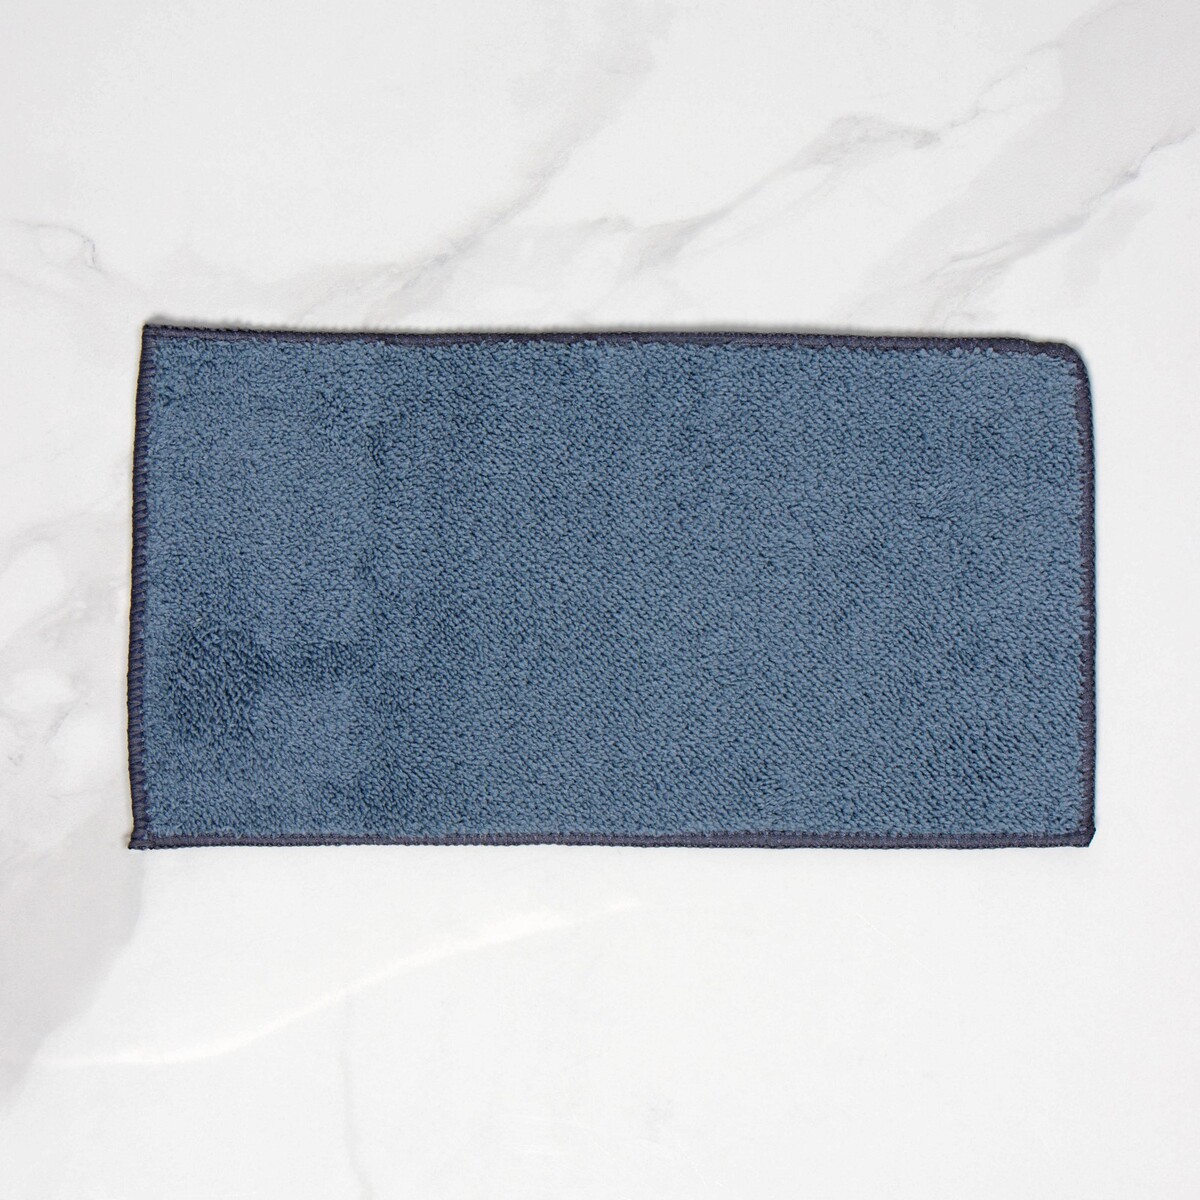 Насадка для окномойки raccoon, микрофибра, 27×7 см, цвет синий насадка для плоской швабры с отжимом доляна арт 2522116 35 5×11 5 см микрофибра синий